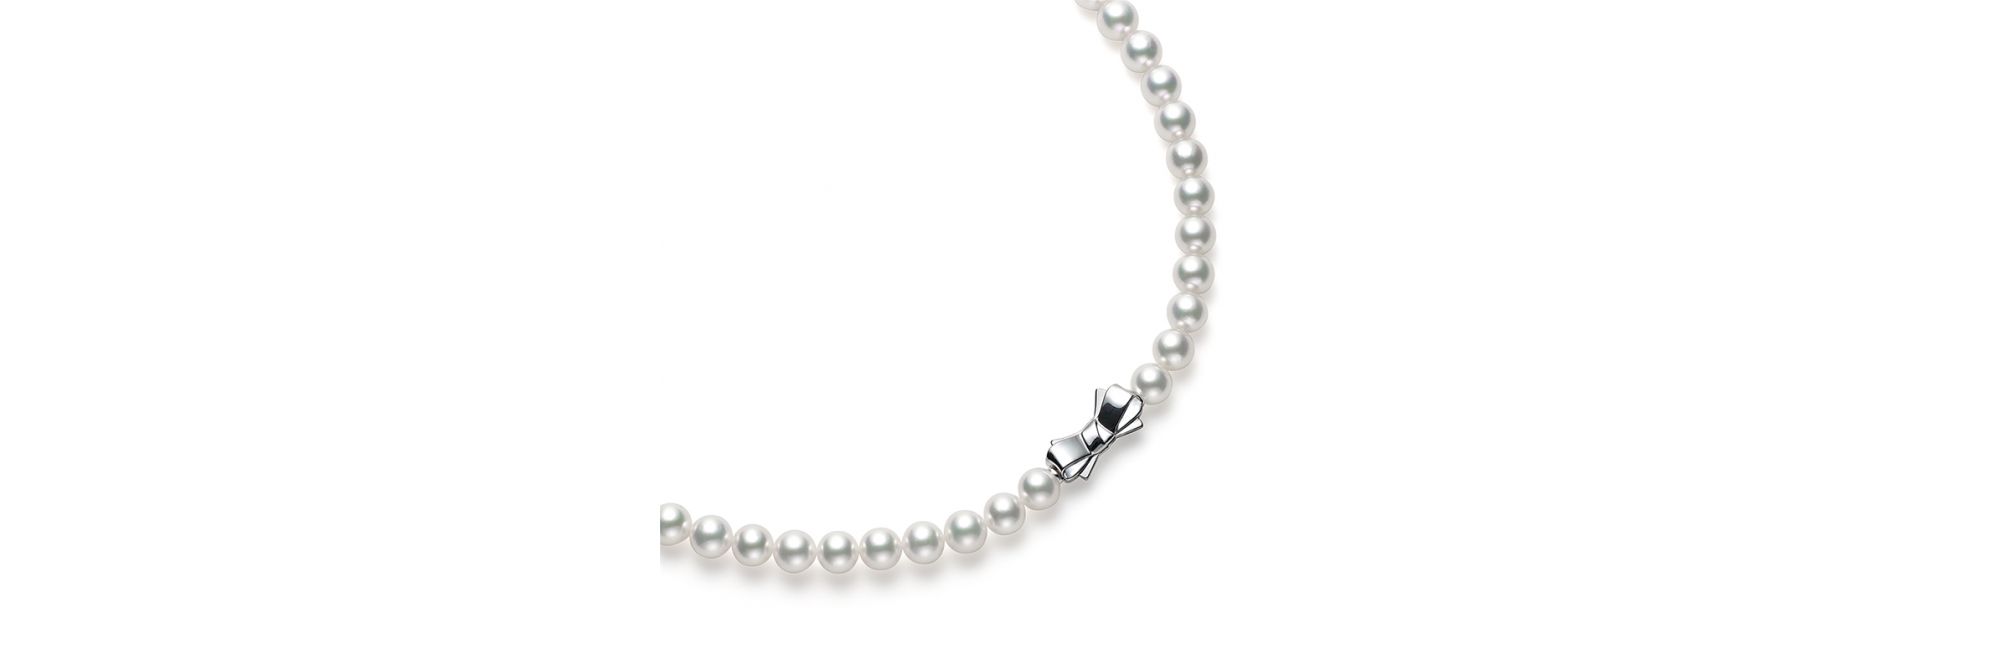 あこや真珠 ネックレス (7.5mm・グレードB) UR-075B-SIL|ネックレス 